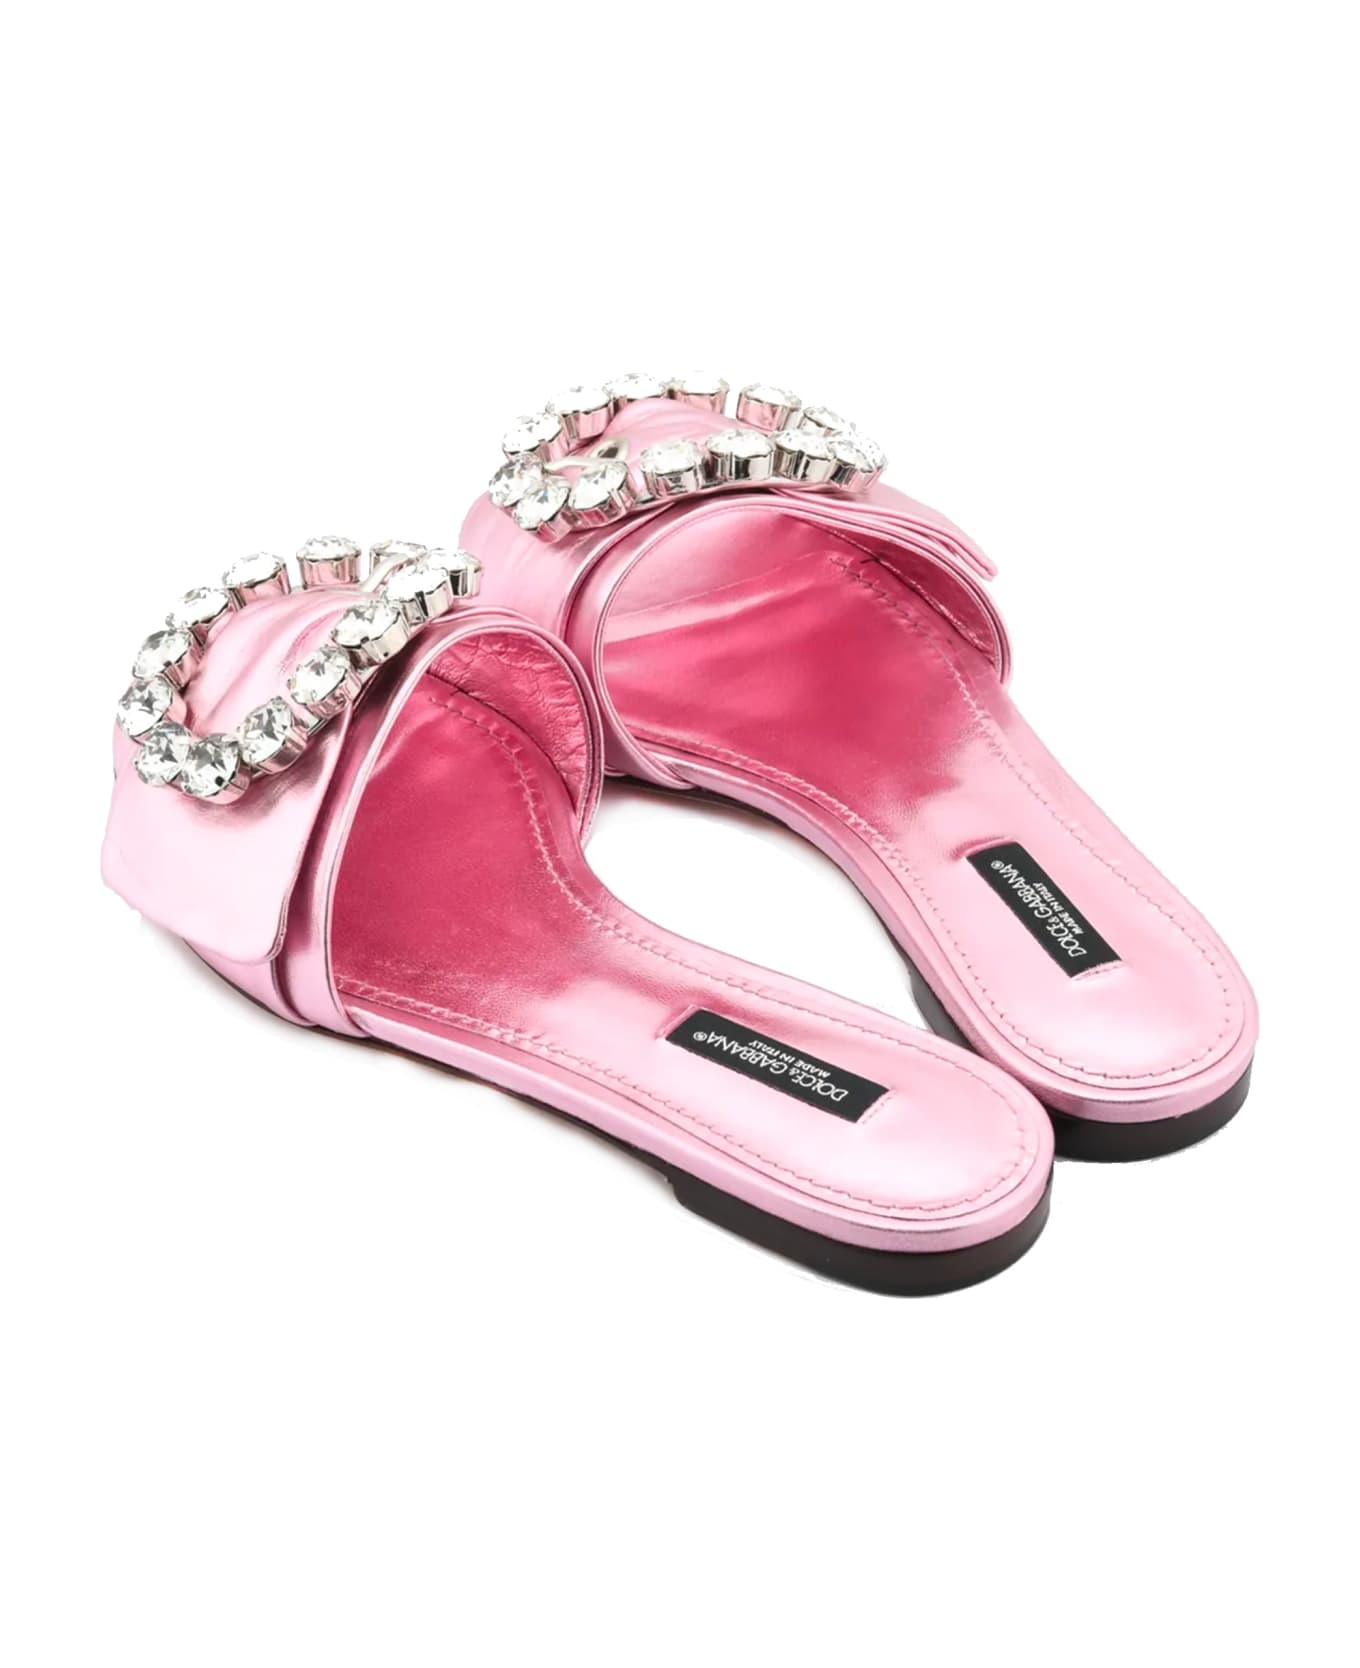 Dolce & Gabbana Crystal Embellished Flats - Pink